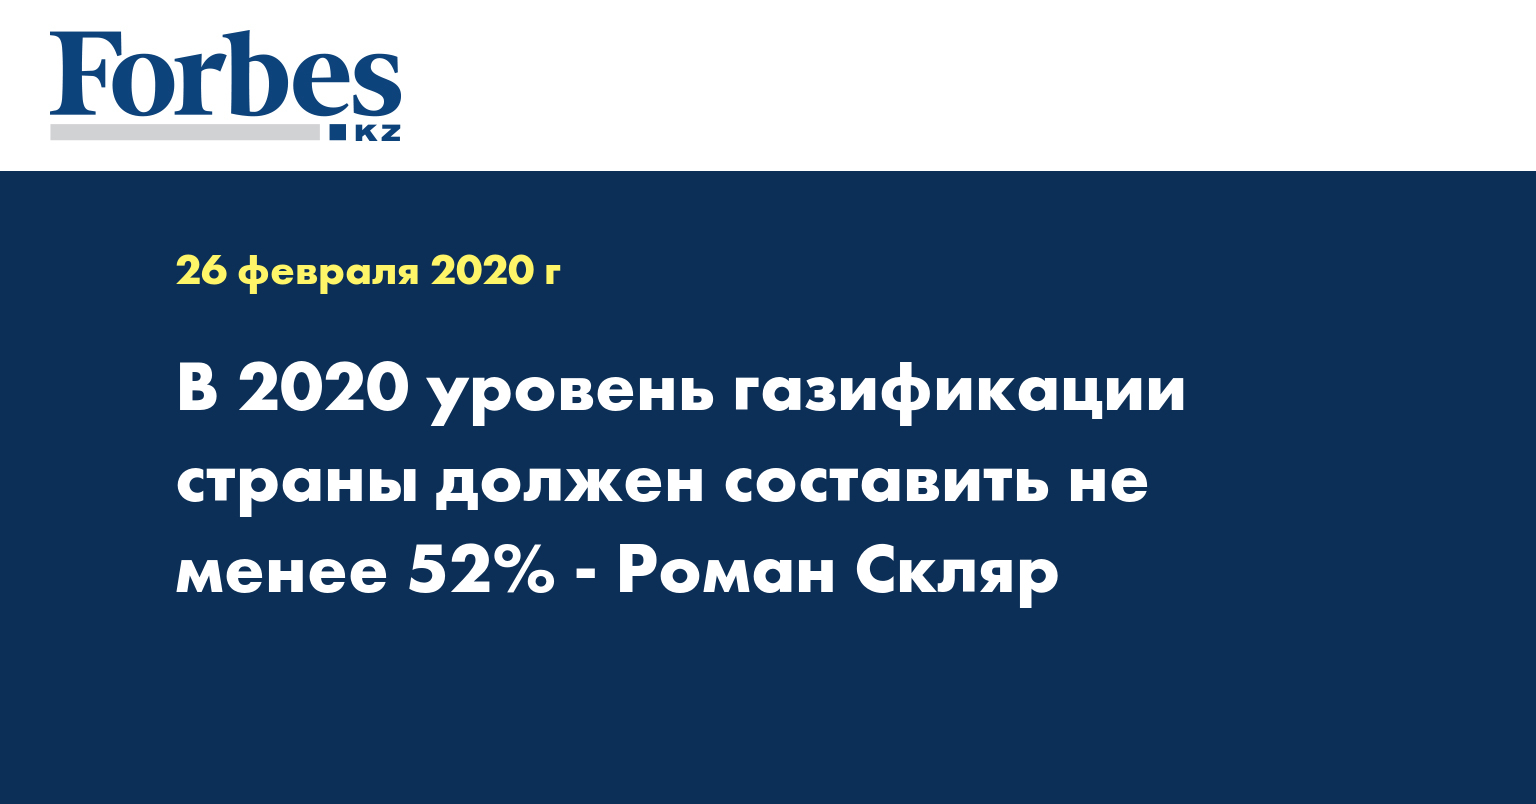 В 2020 уровень газификации страны должен составить не менее 52% - Роман Скляр